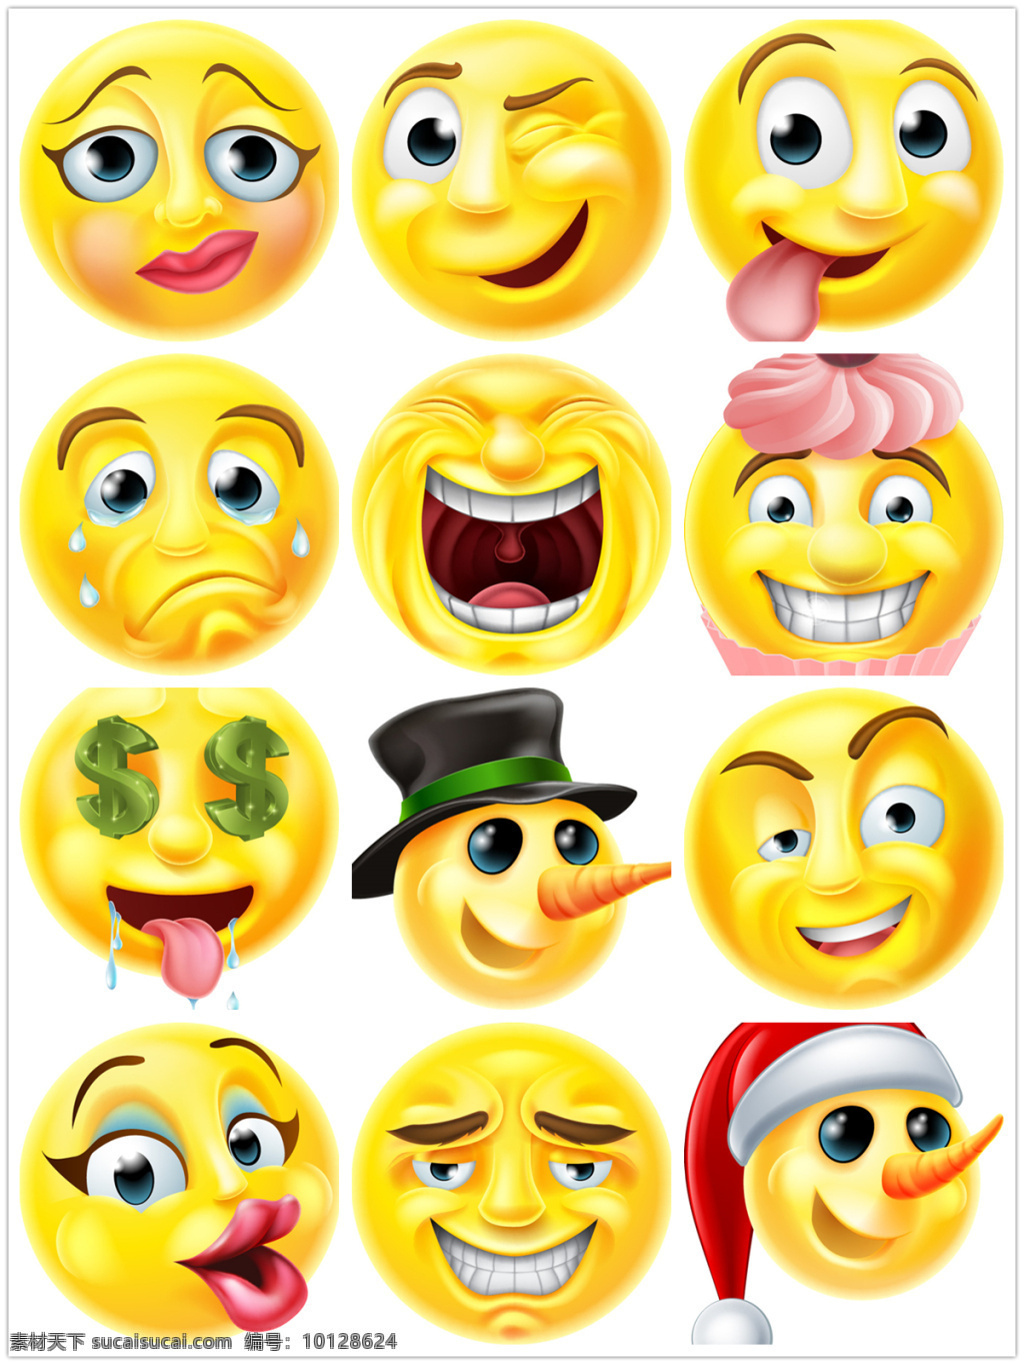 时尚卡通表情 卡通表情 立体表情 3d表情 可爱表情 情绪表情 高兴 快乐 哭泣 悲伤 难过 喜怒哀乐 矢量素材 黄色